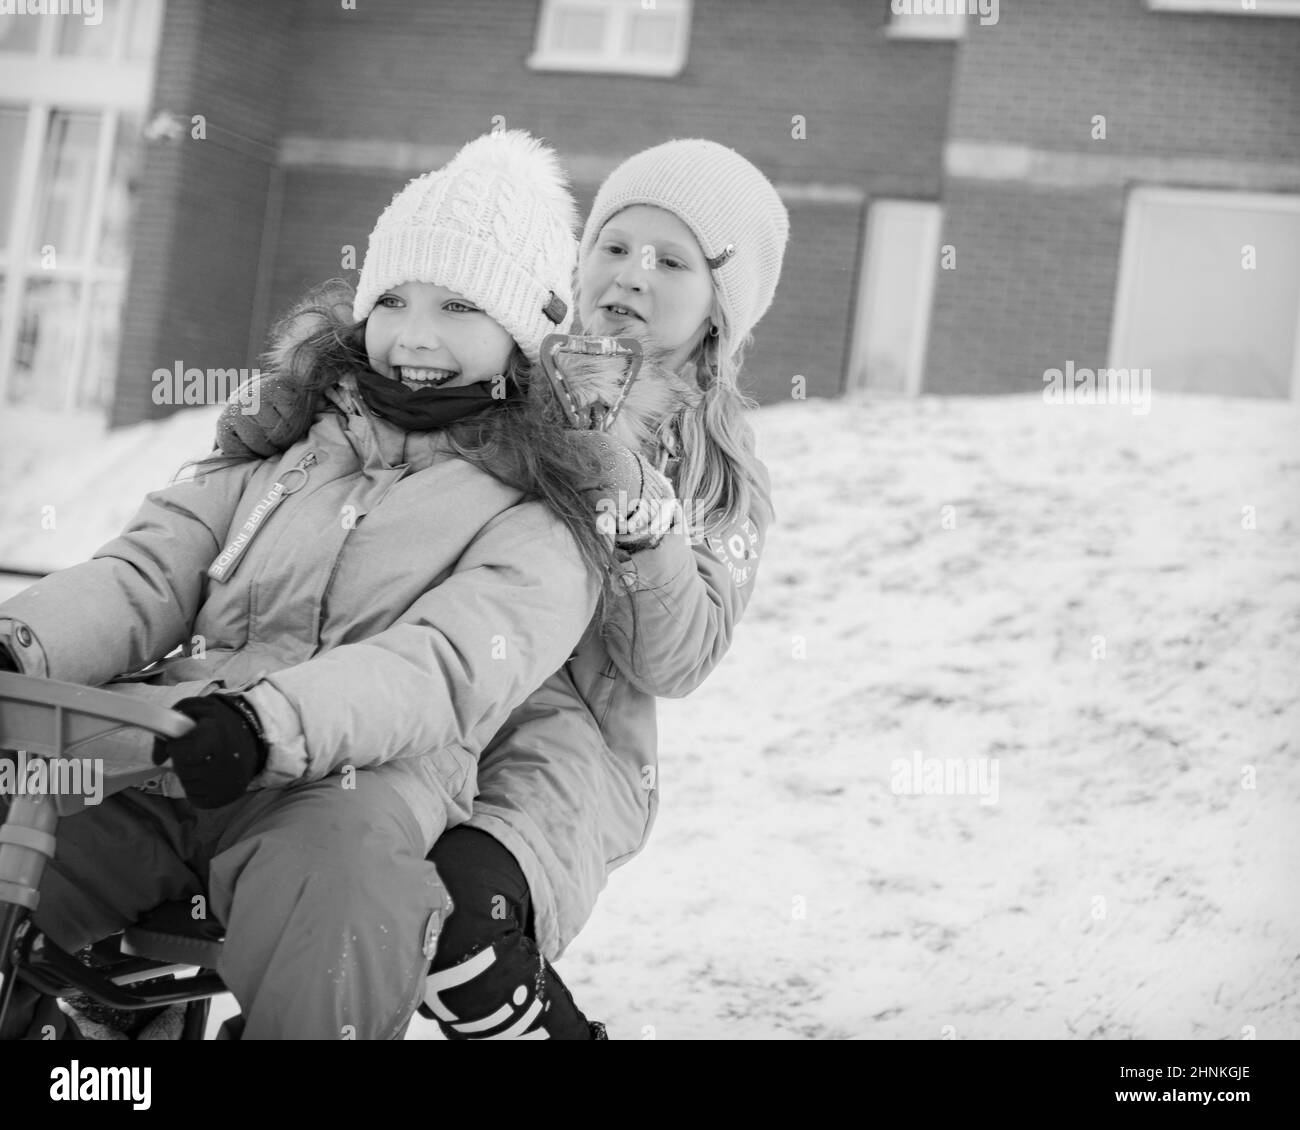 dos chicas jóvenes paseando en trineo juntos y sonriendo Foto de stock